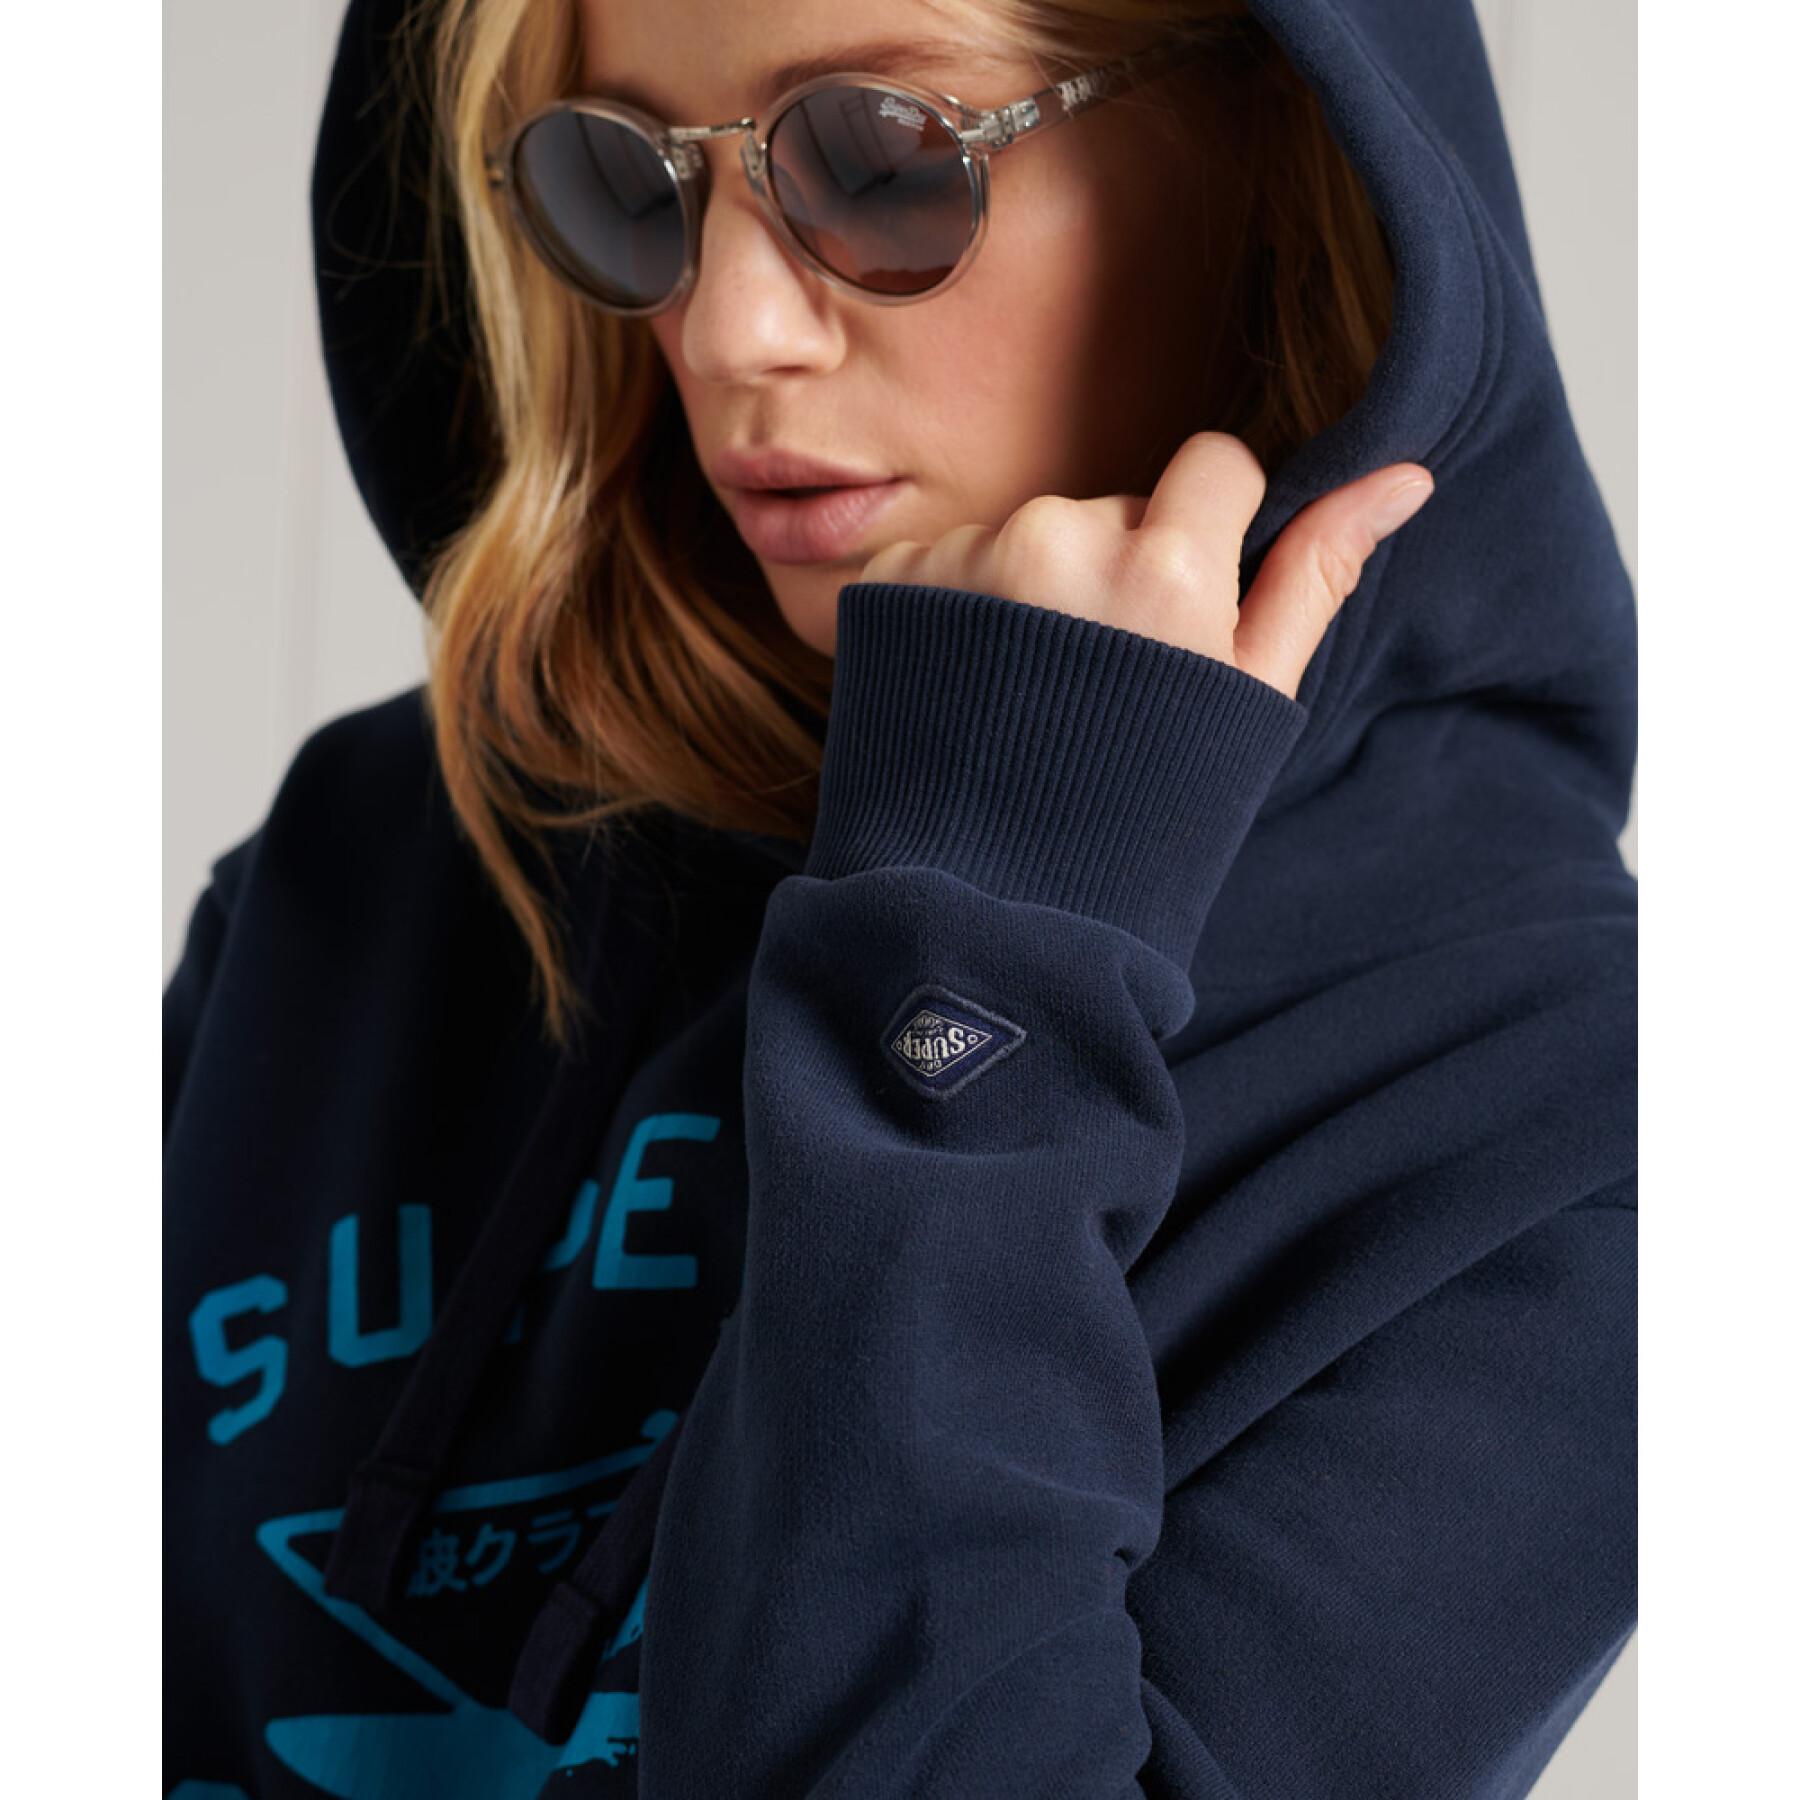 Women's hooded sweatshirt Superdry Cali Surf